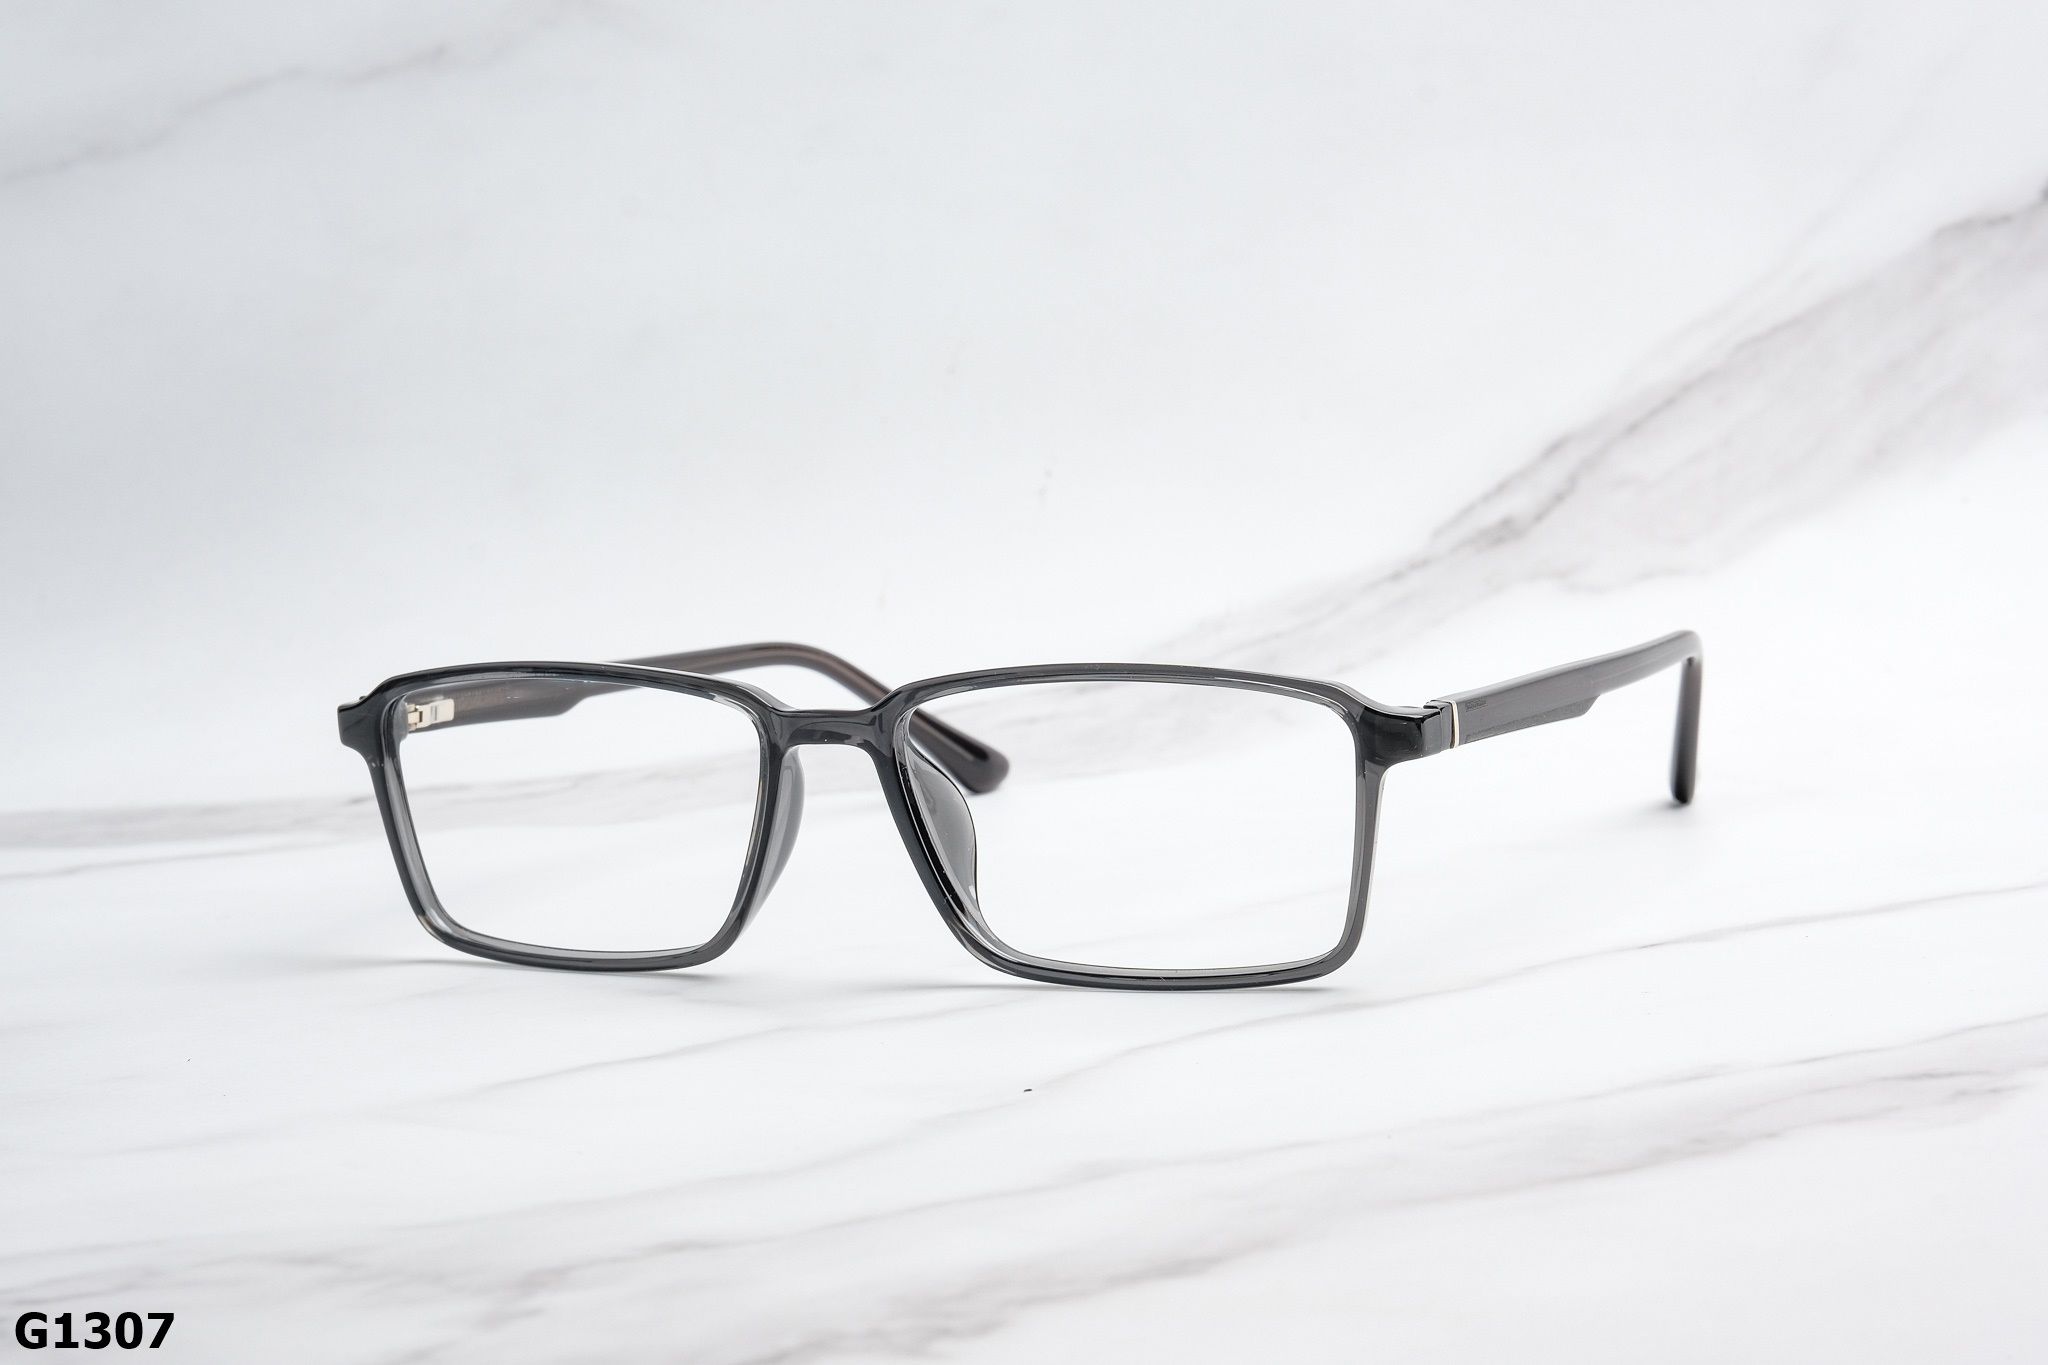  Rex-ton Eyewear - Glasses - G1307 